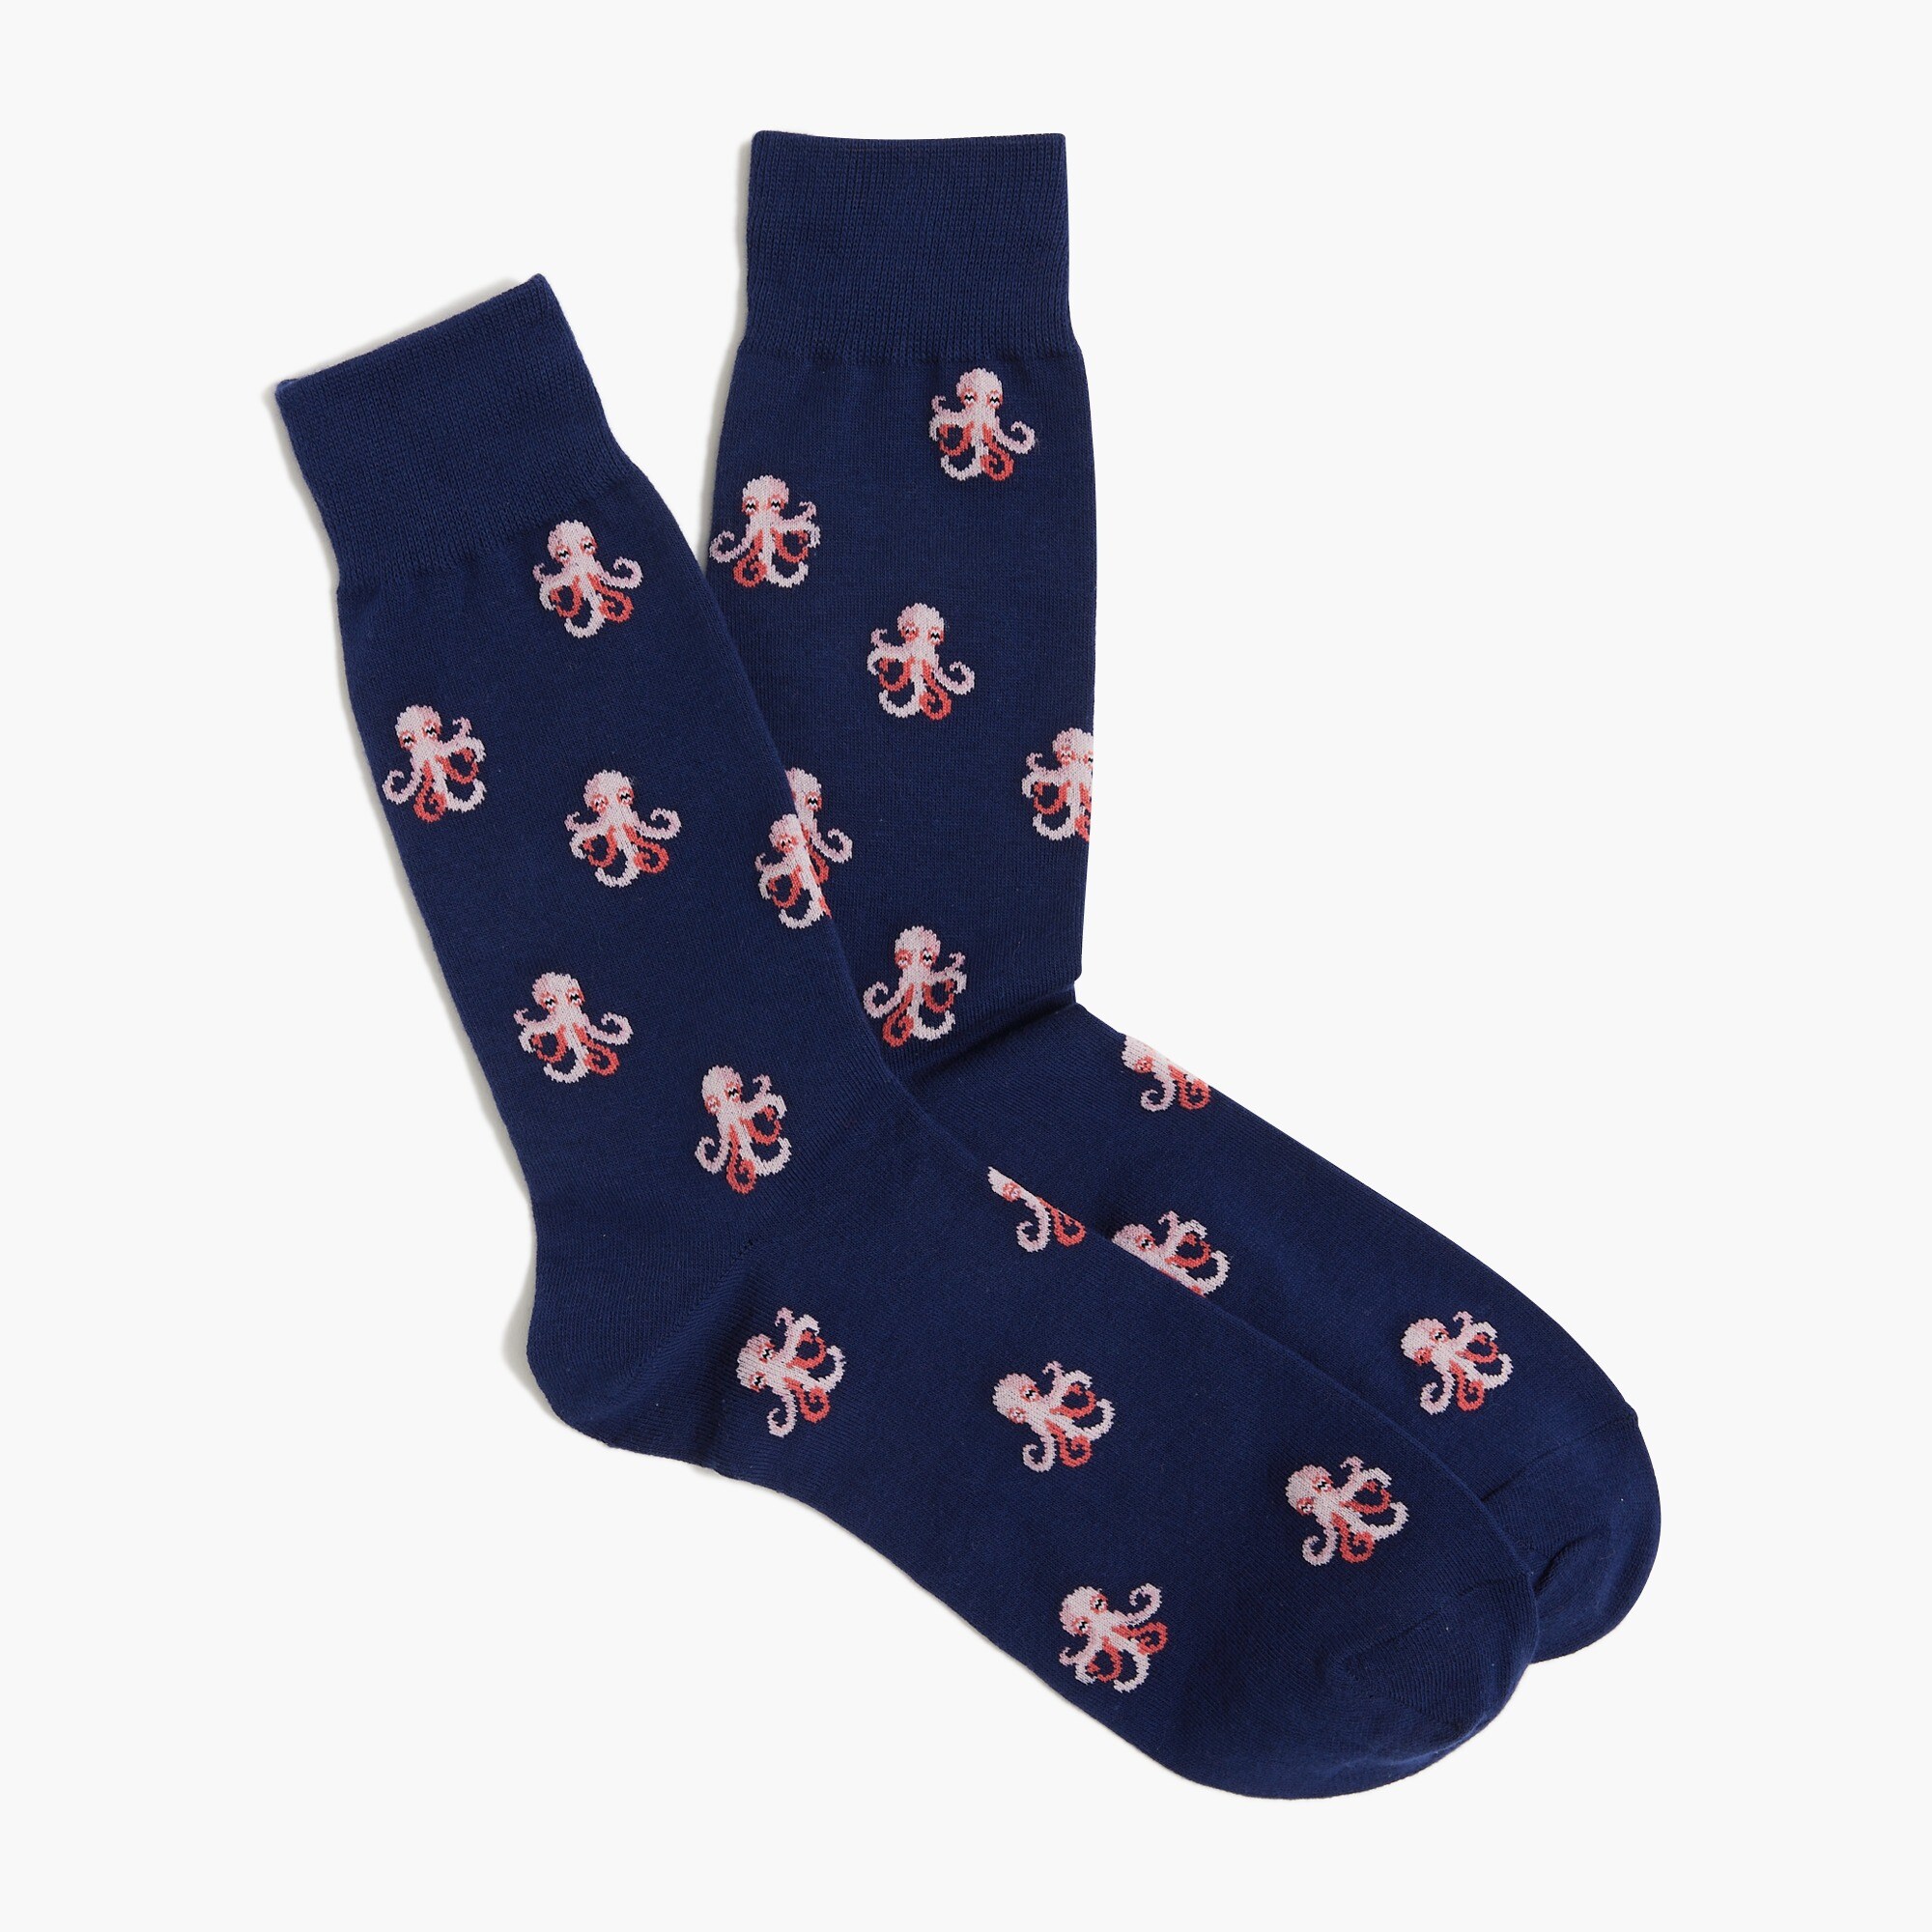  Octopus socks